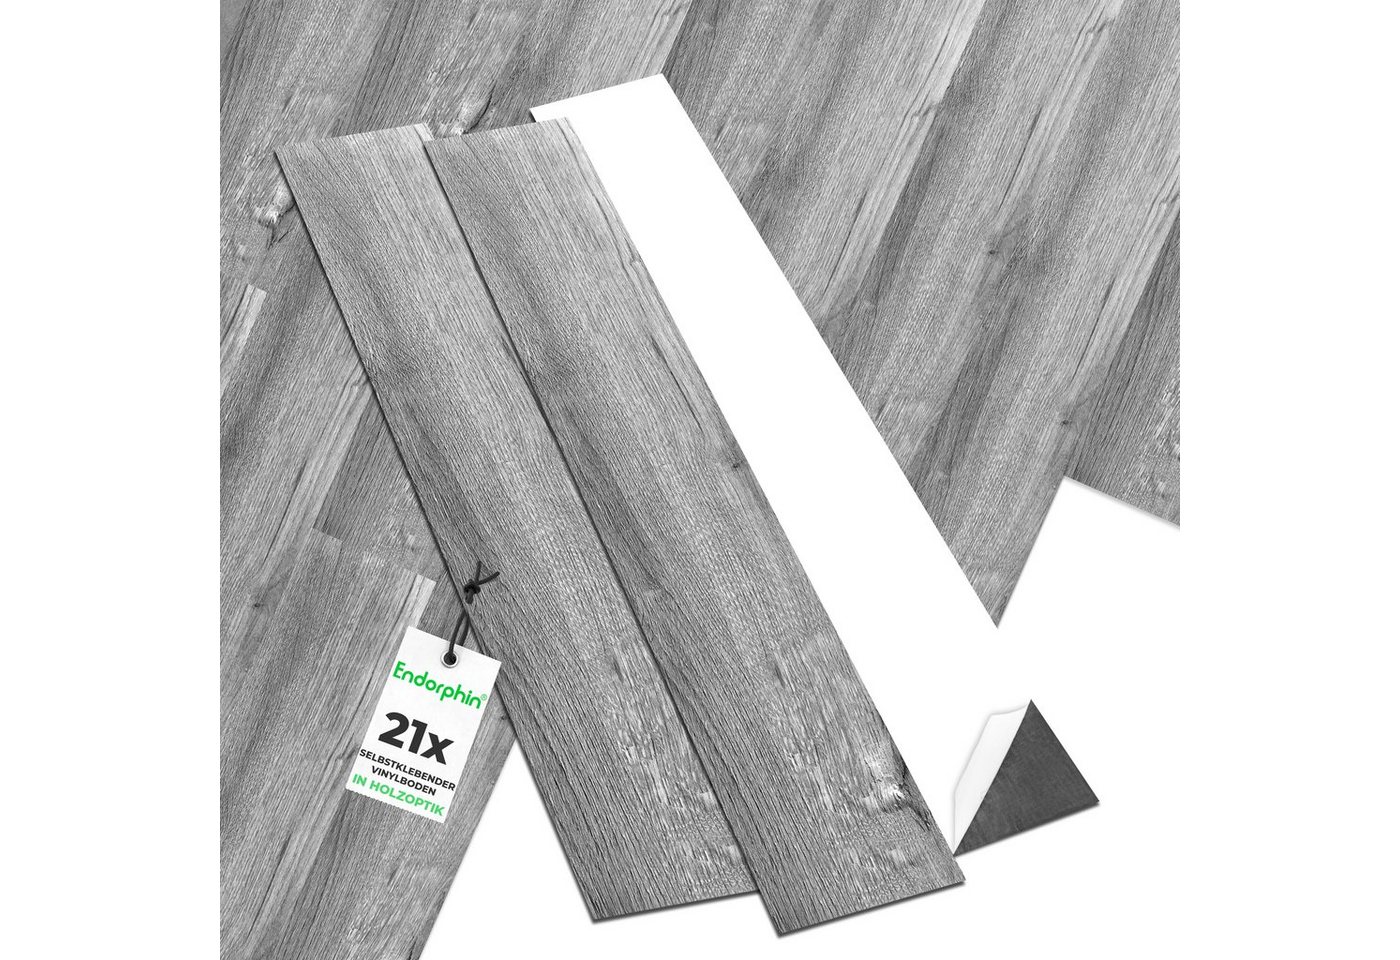 Endorphin Vinylboden Vinylboden selbstklebend in Holzoptik Dunkelgrau 2,93qm, mit fühlbarer Oberfläche von Endorphin